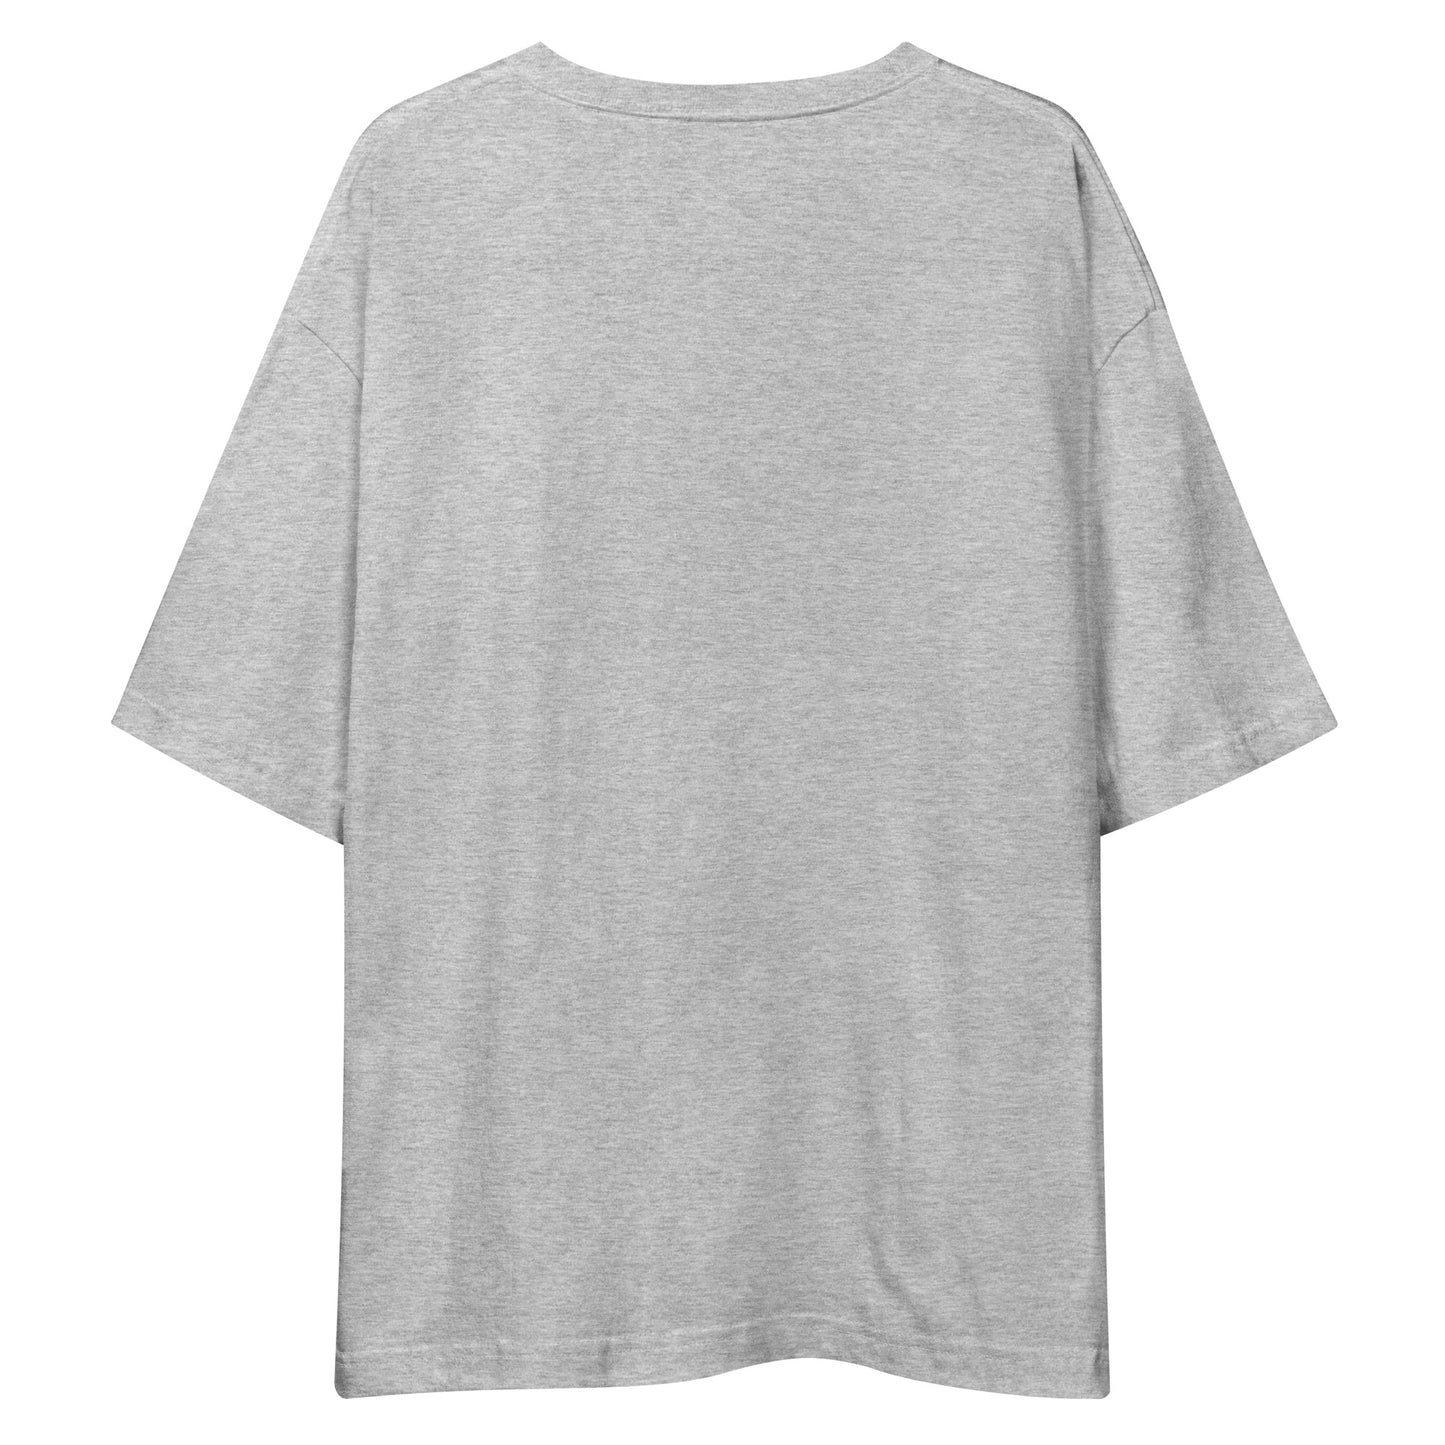 E227 - T-shirt/Oversized (Universal jump/woman : Gray/Charcoal)